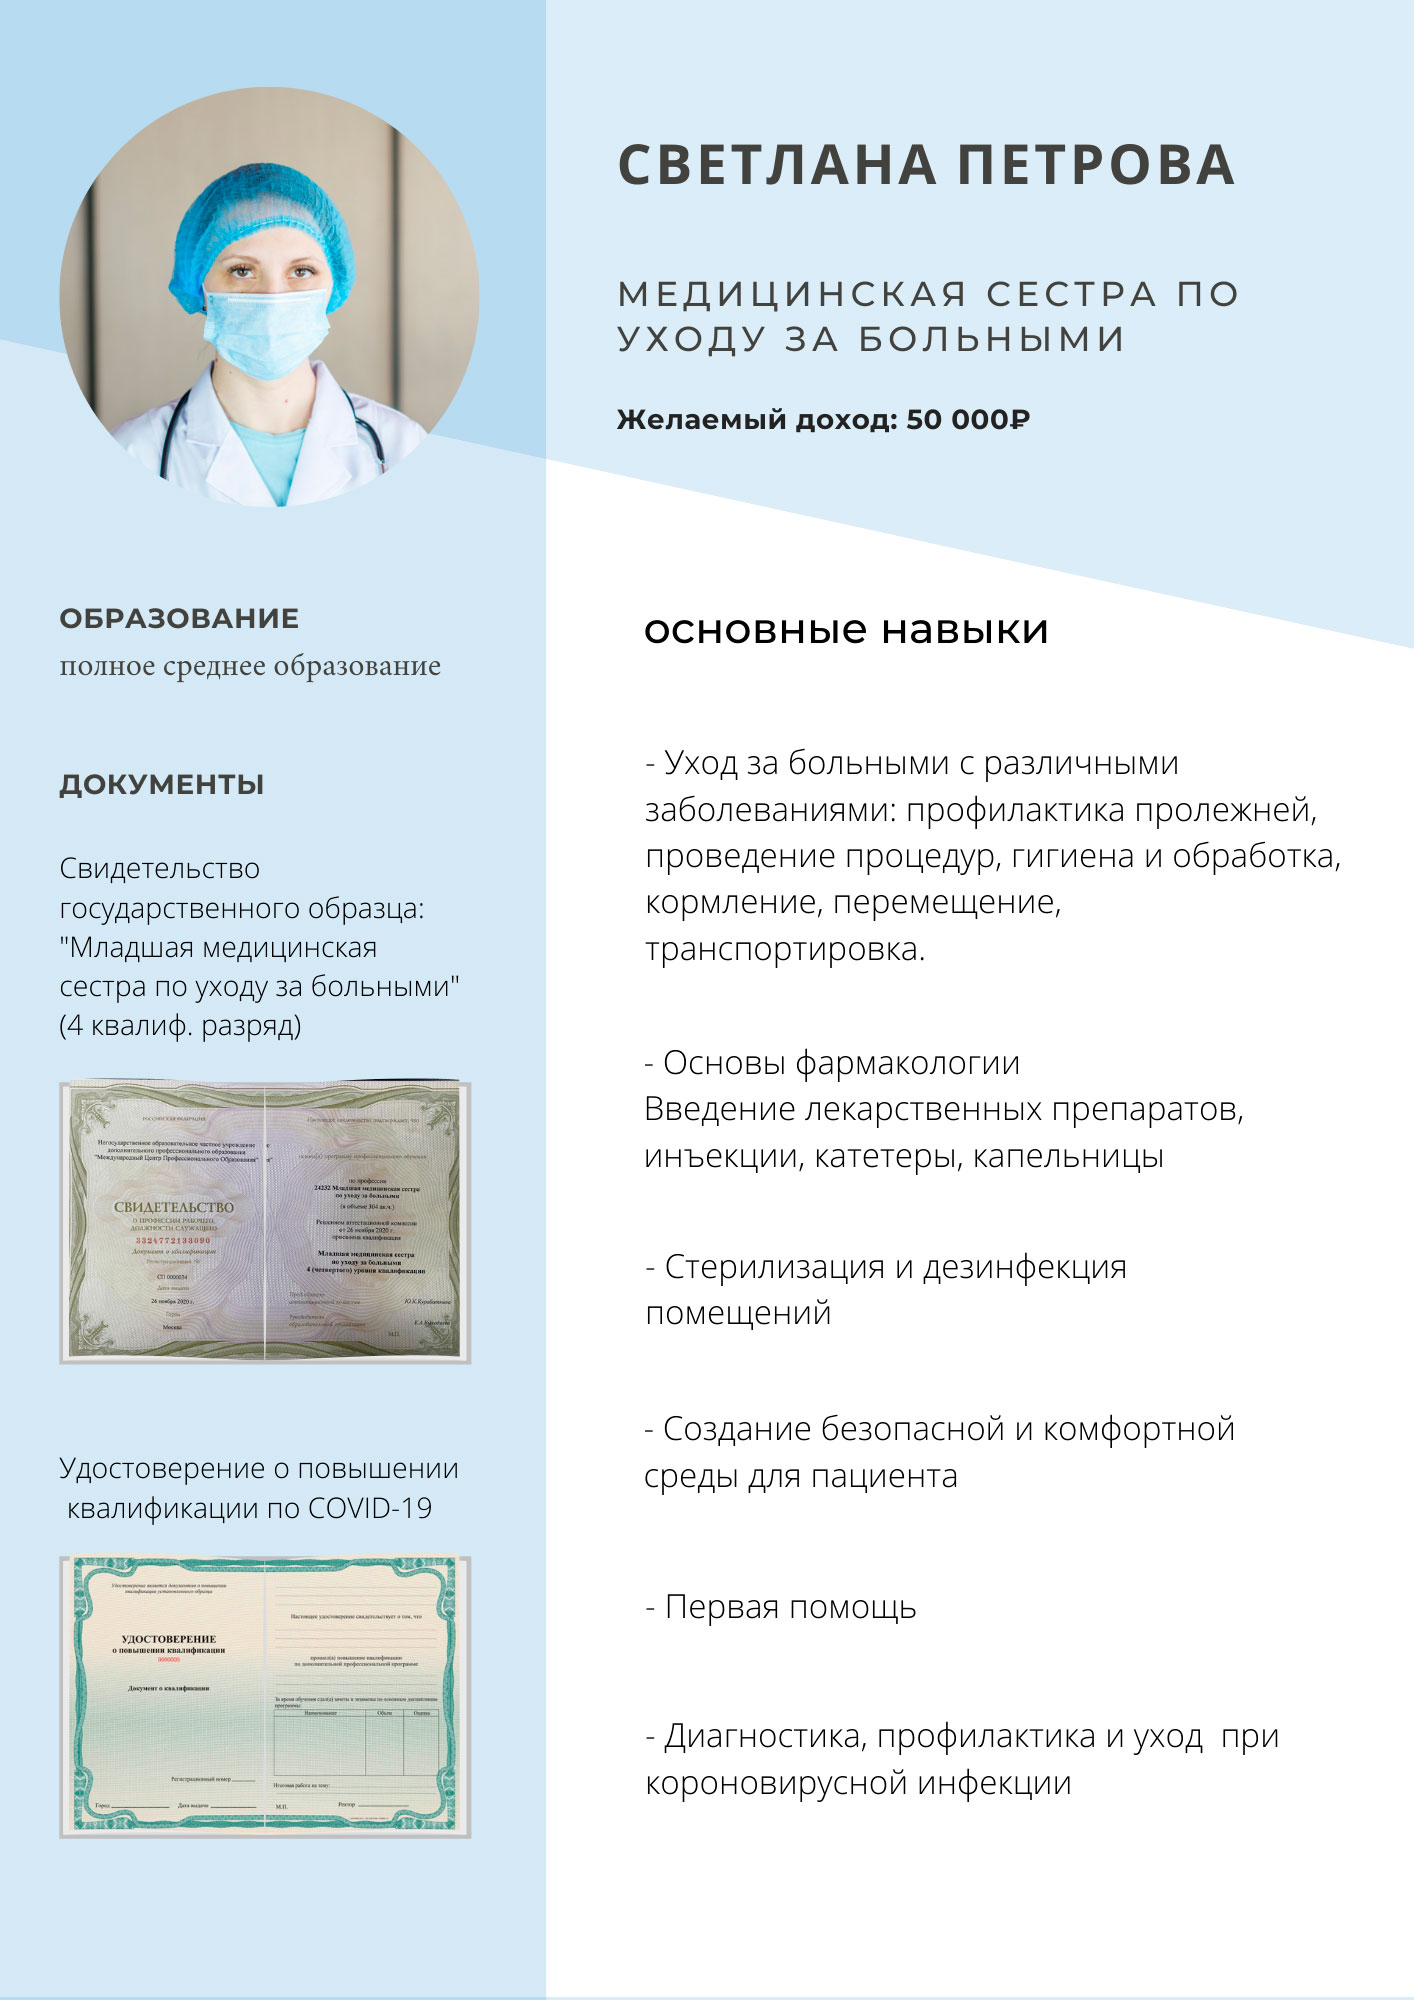 Получить сертификат младшей медицинской сестры